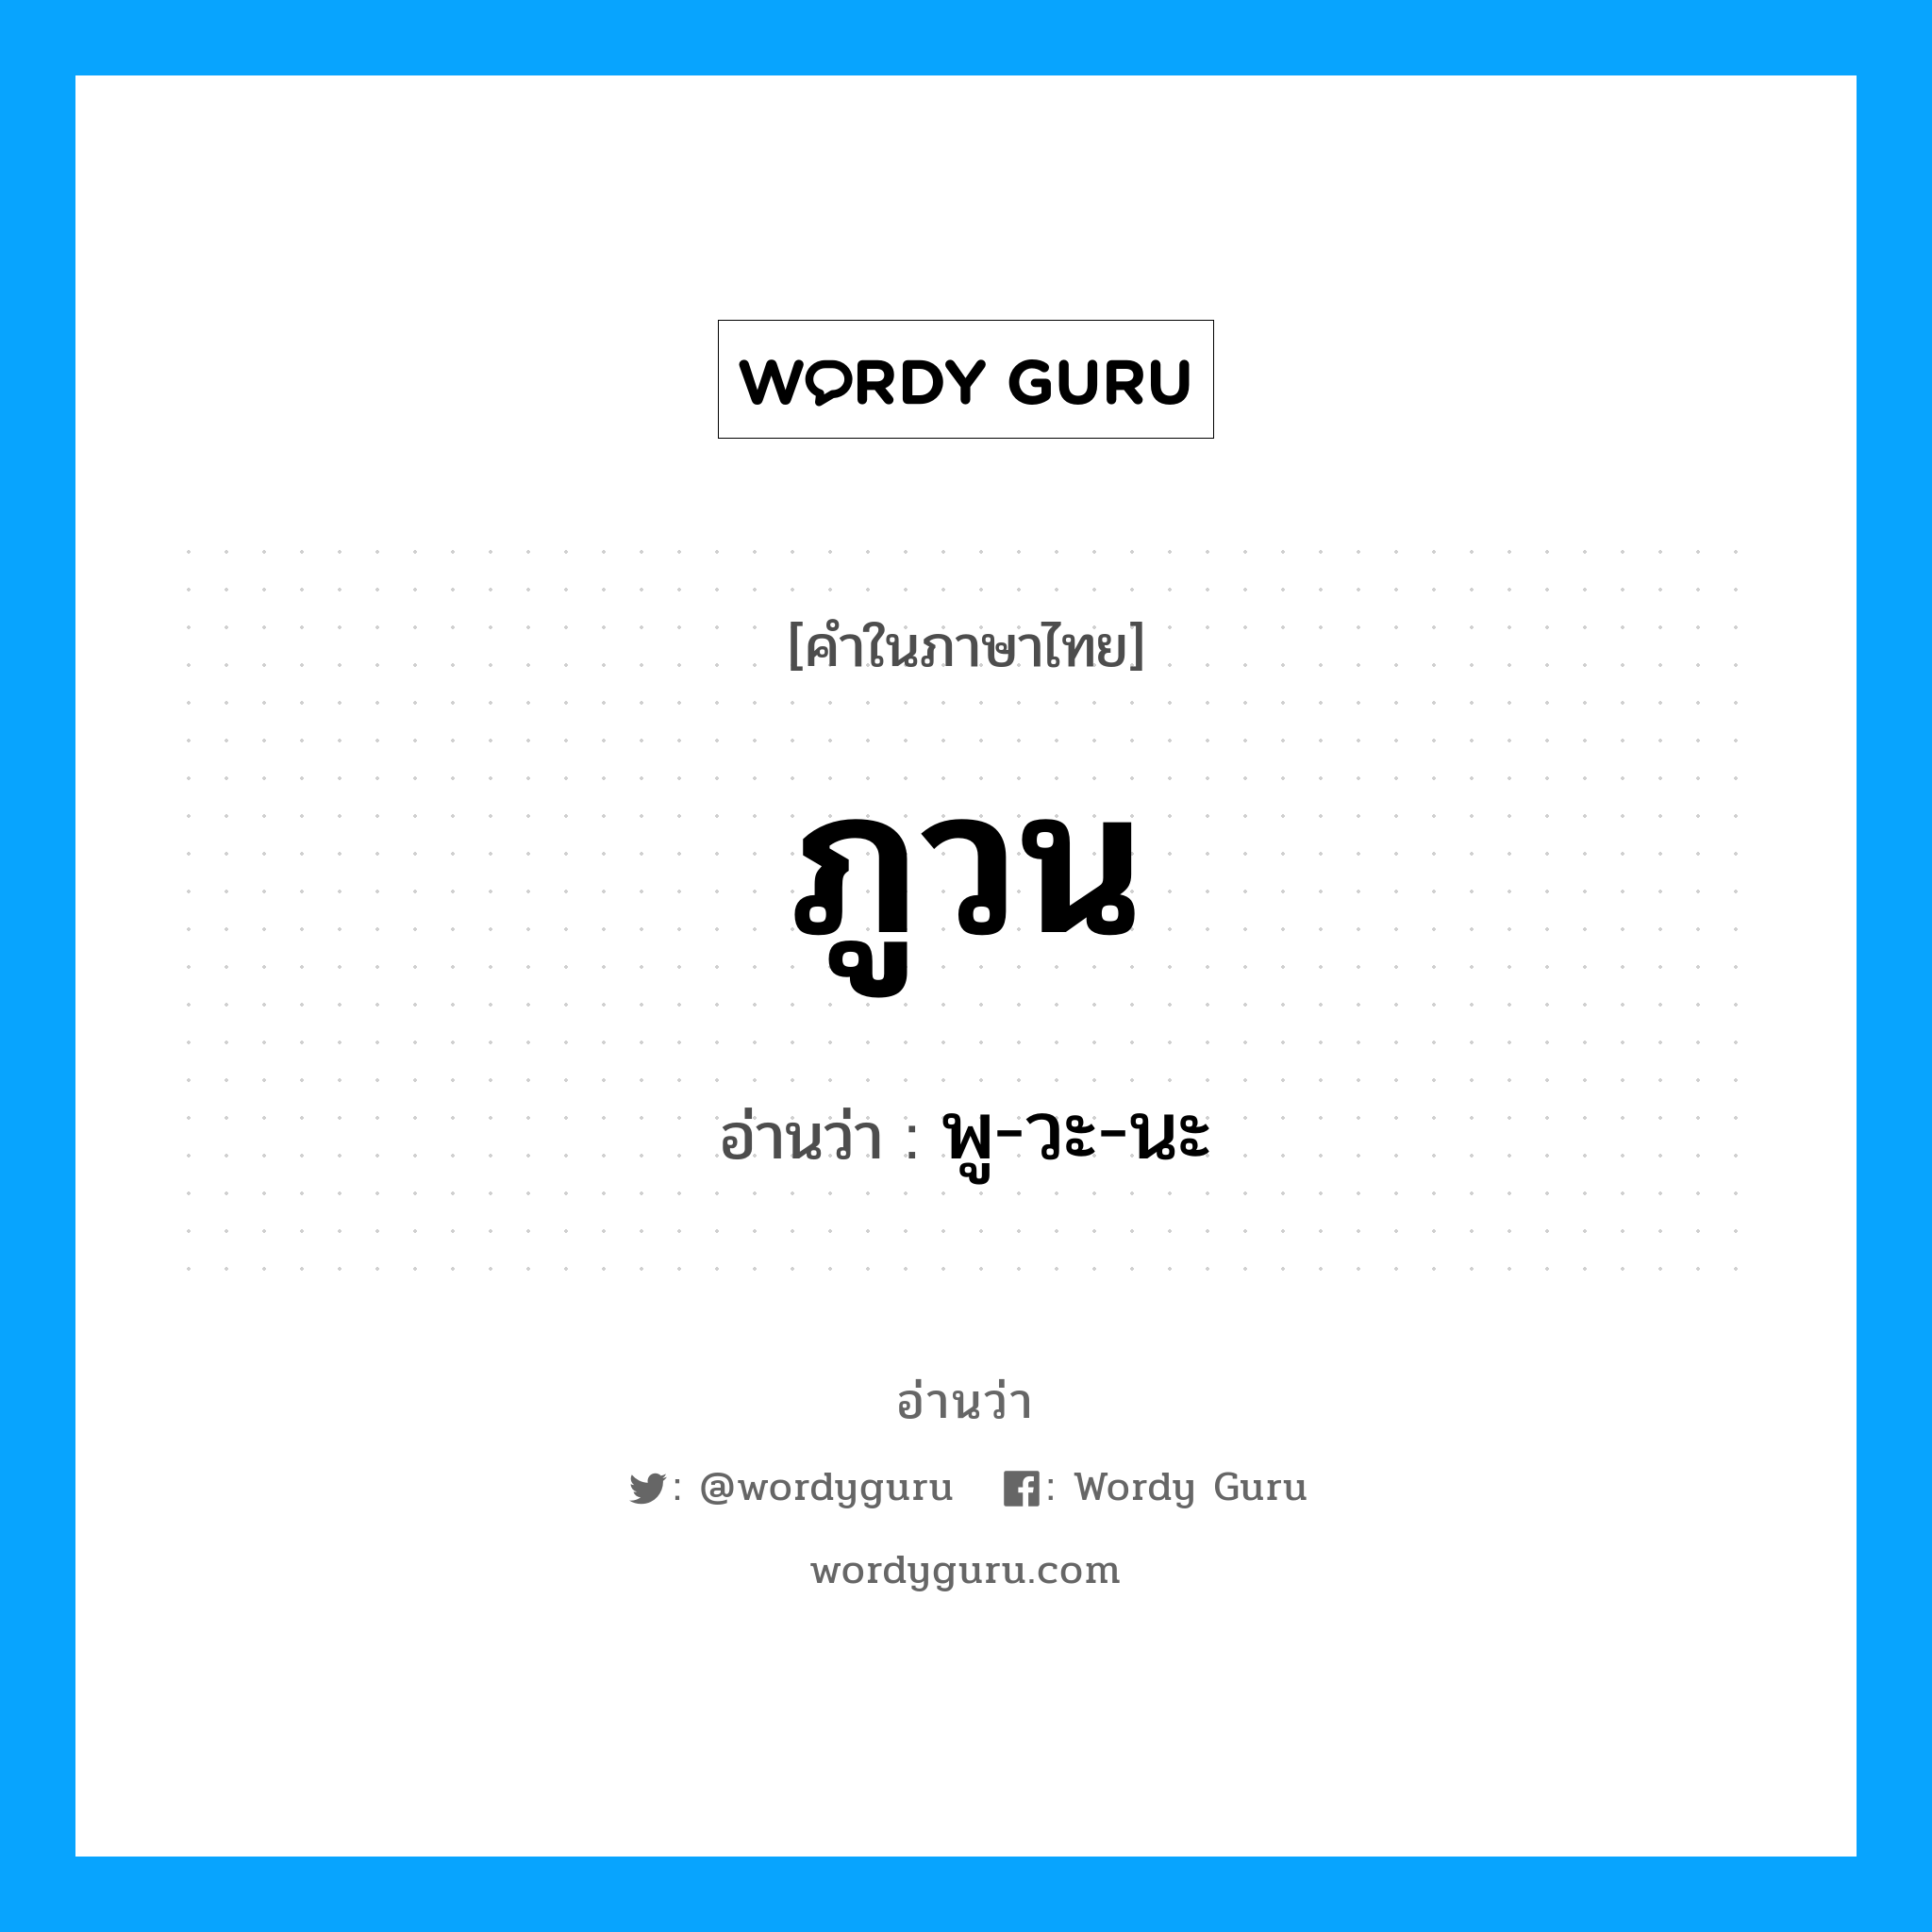 พู-วะ-นะ เป็นคำอ่านของคำไหน?, คำในภาษาไทย พู-วะ-นะ อ่านว่า ภูวน